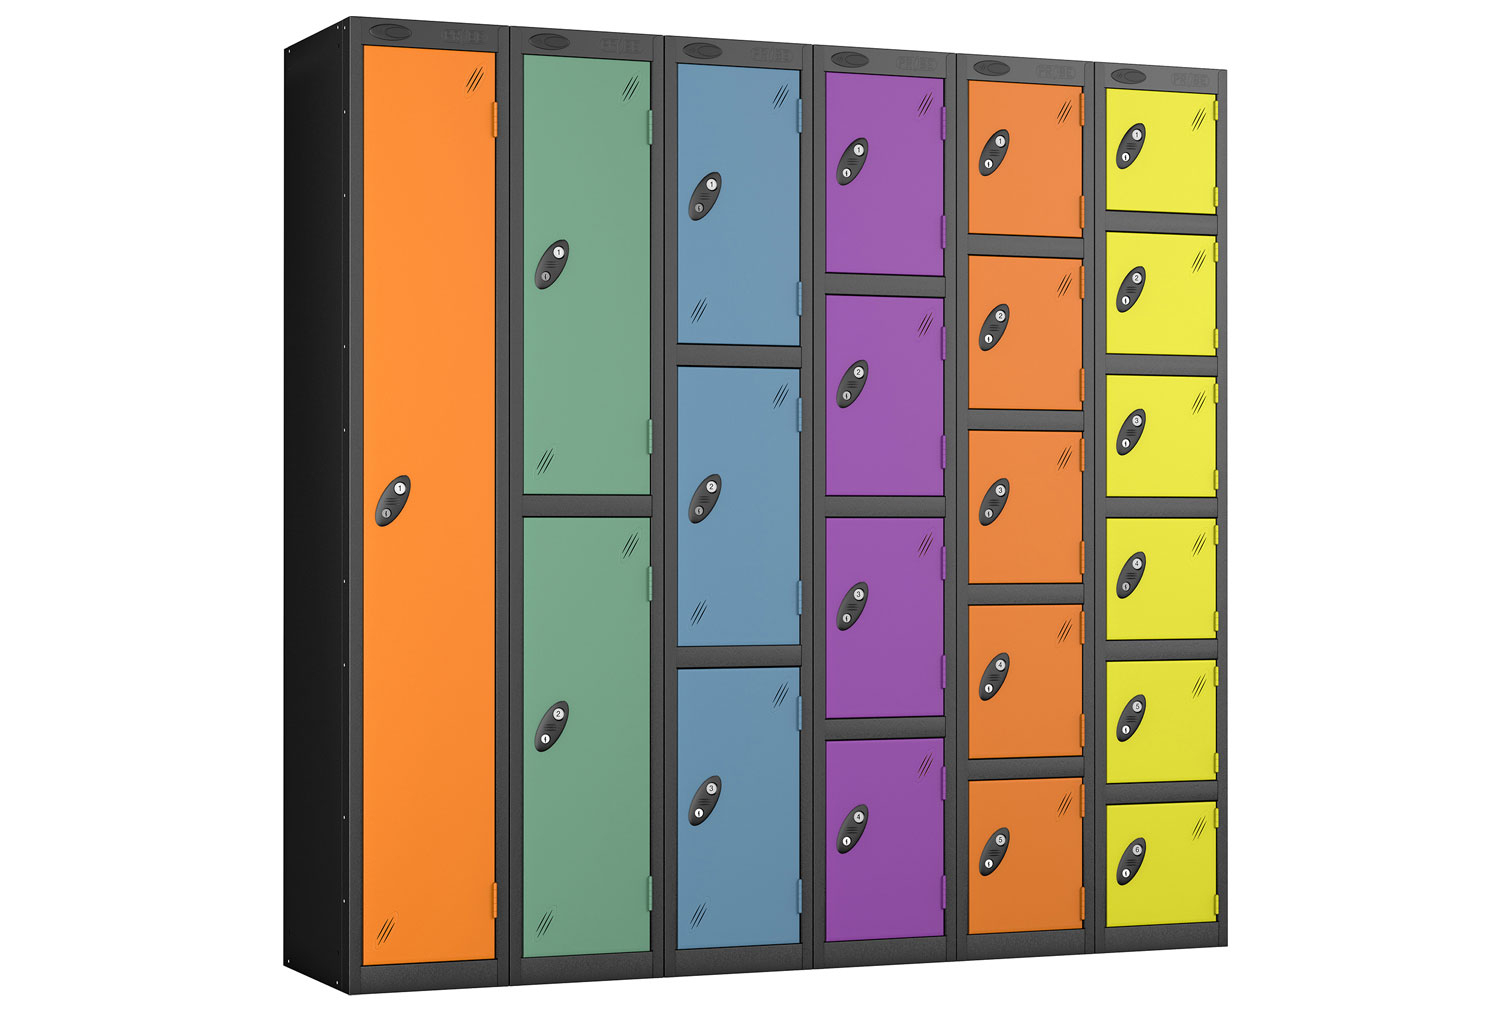 Probe Autumn Colour Lockers With Black Body, 4 Door, 31wx31dx178h (cm), Hasp Lock, Black Body, Orange